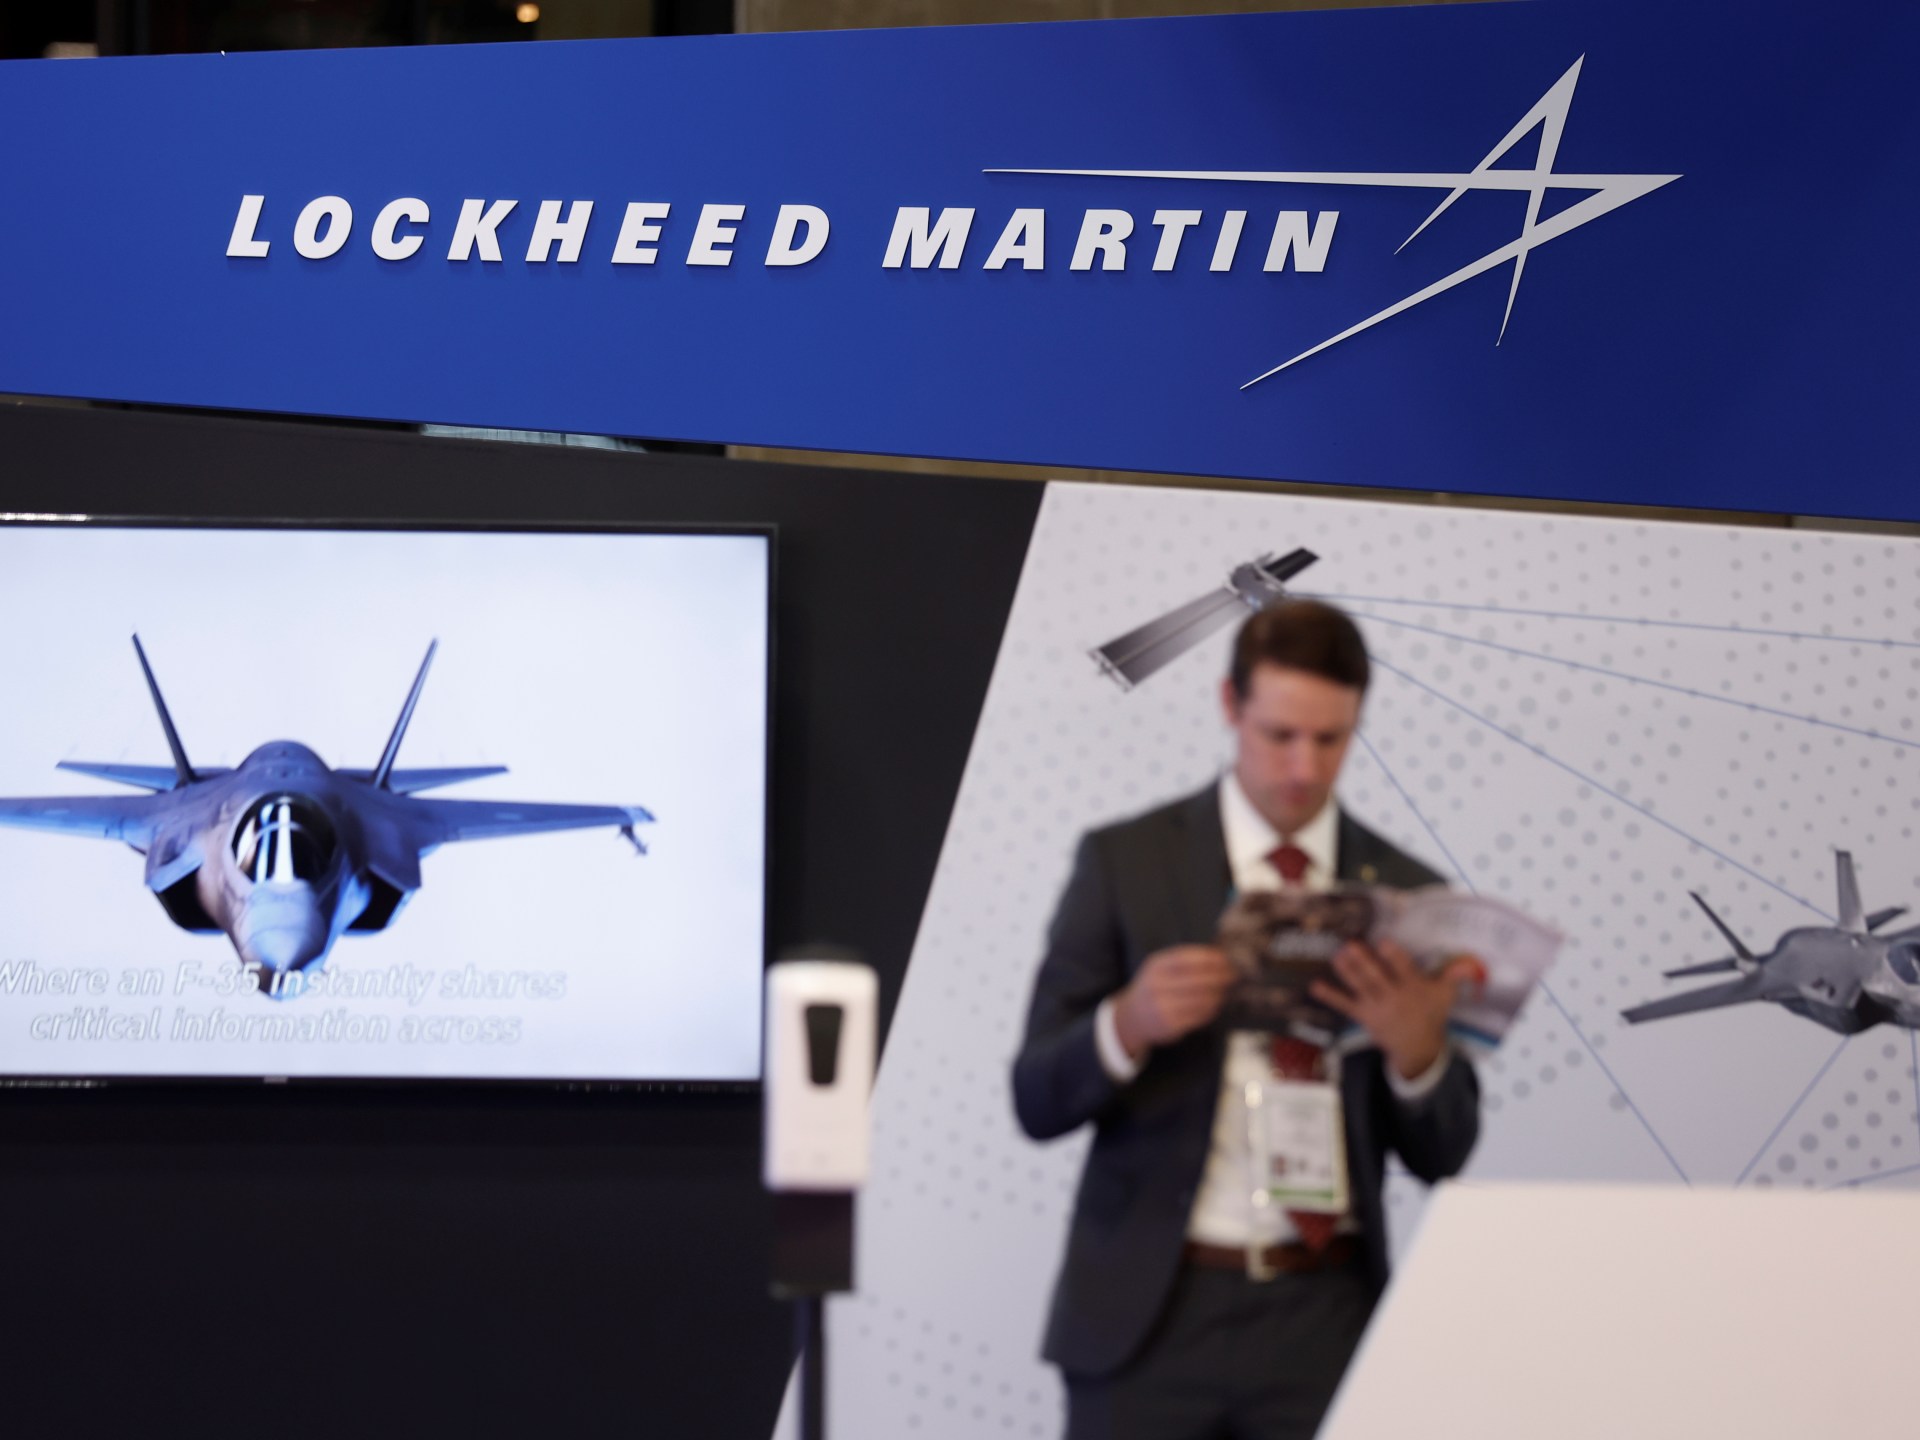 China memberikan sanksi kepada Lockheed Martin, Raytheon atas penjualan senjata di Taiwan |  Berita Konflik